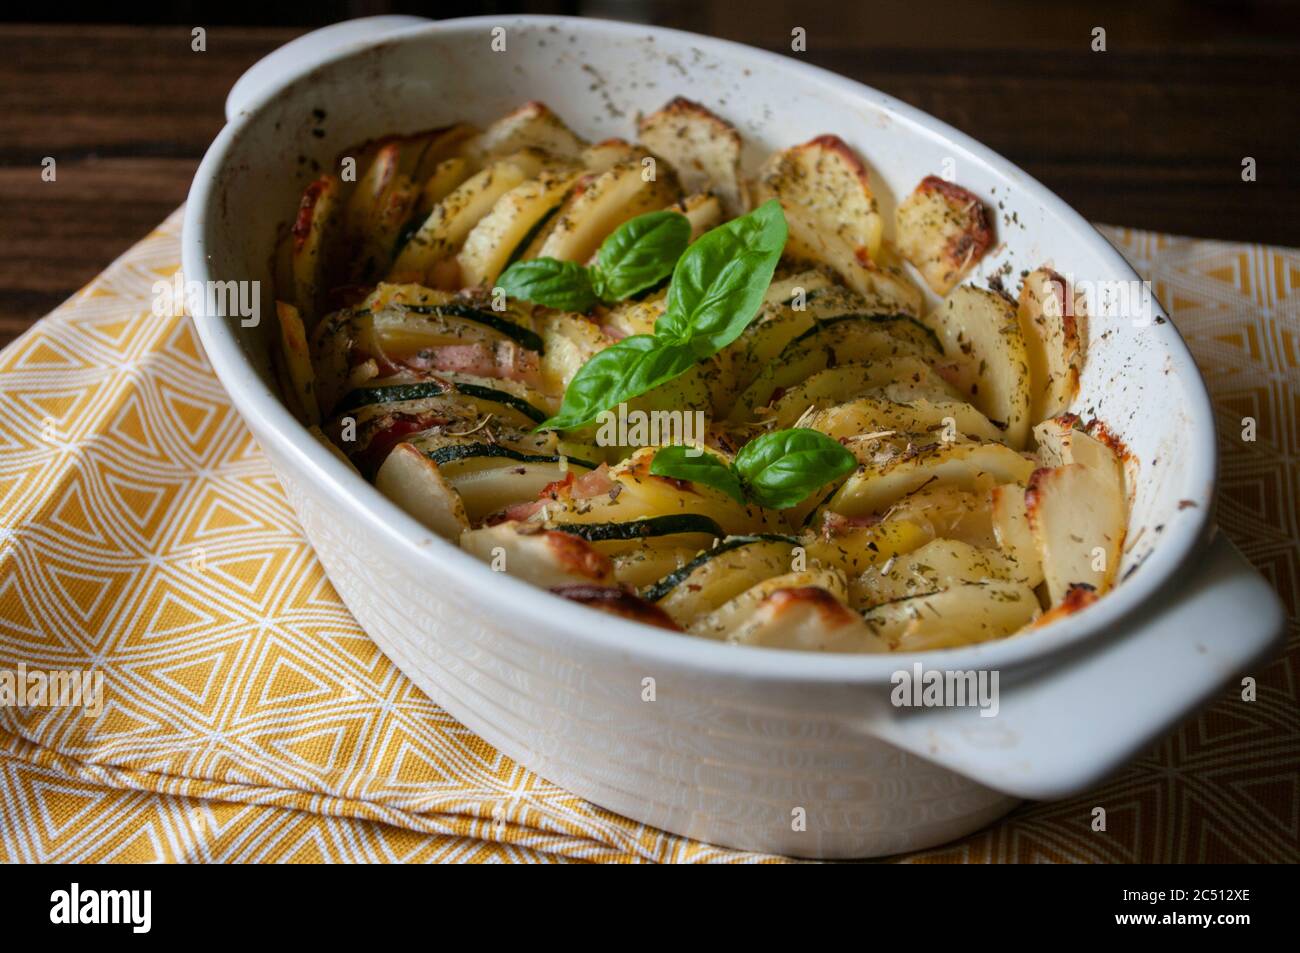 Recette de plat de cocotte. Gratin de pommes de terre copieux, bacon et  courgettes, fraîchement servis au four sur une table en bois. Gros plan  Photo Stock - Alamy